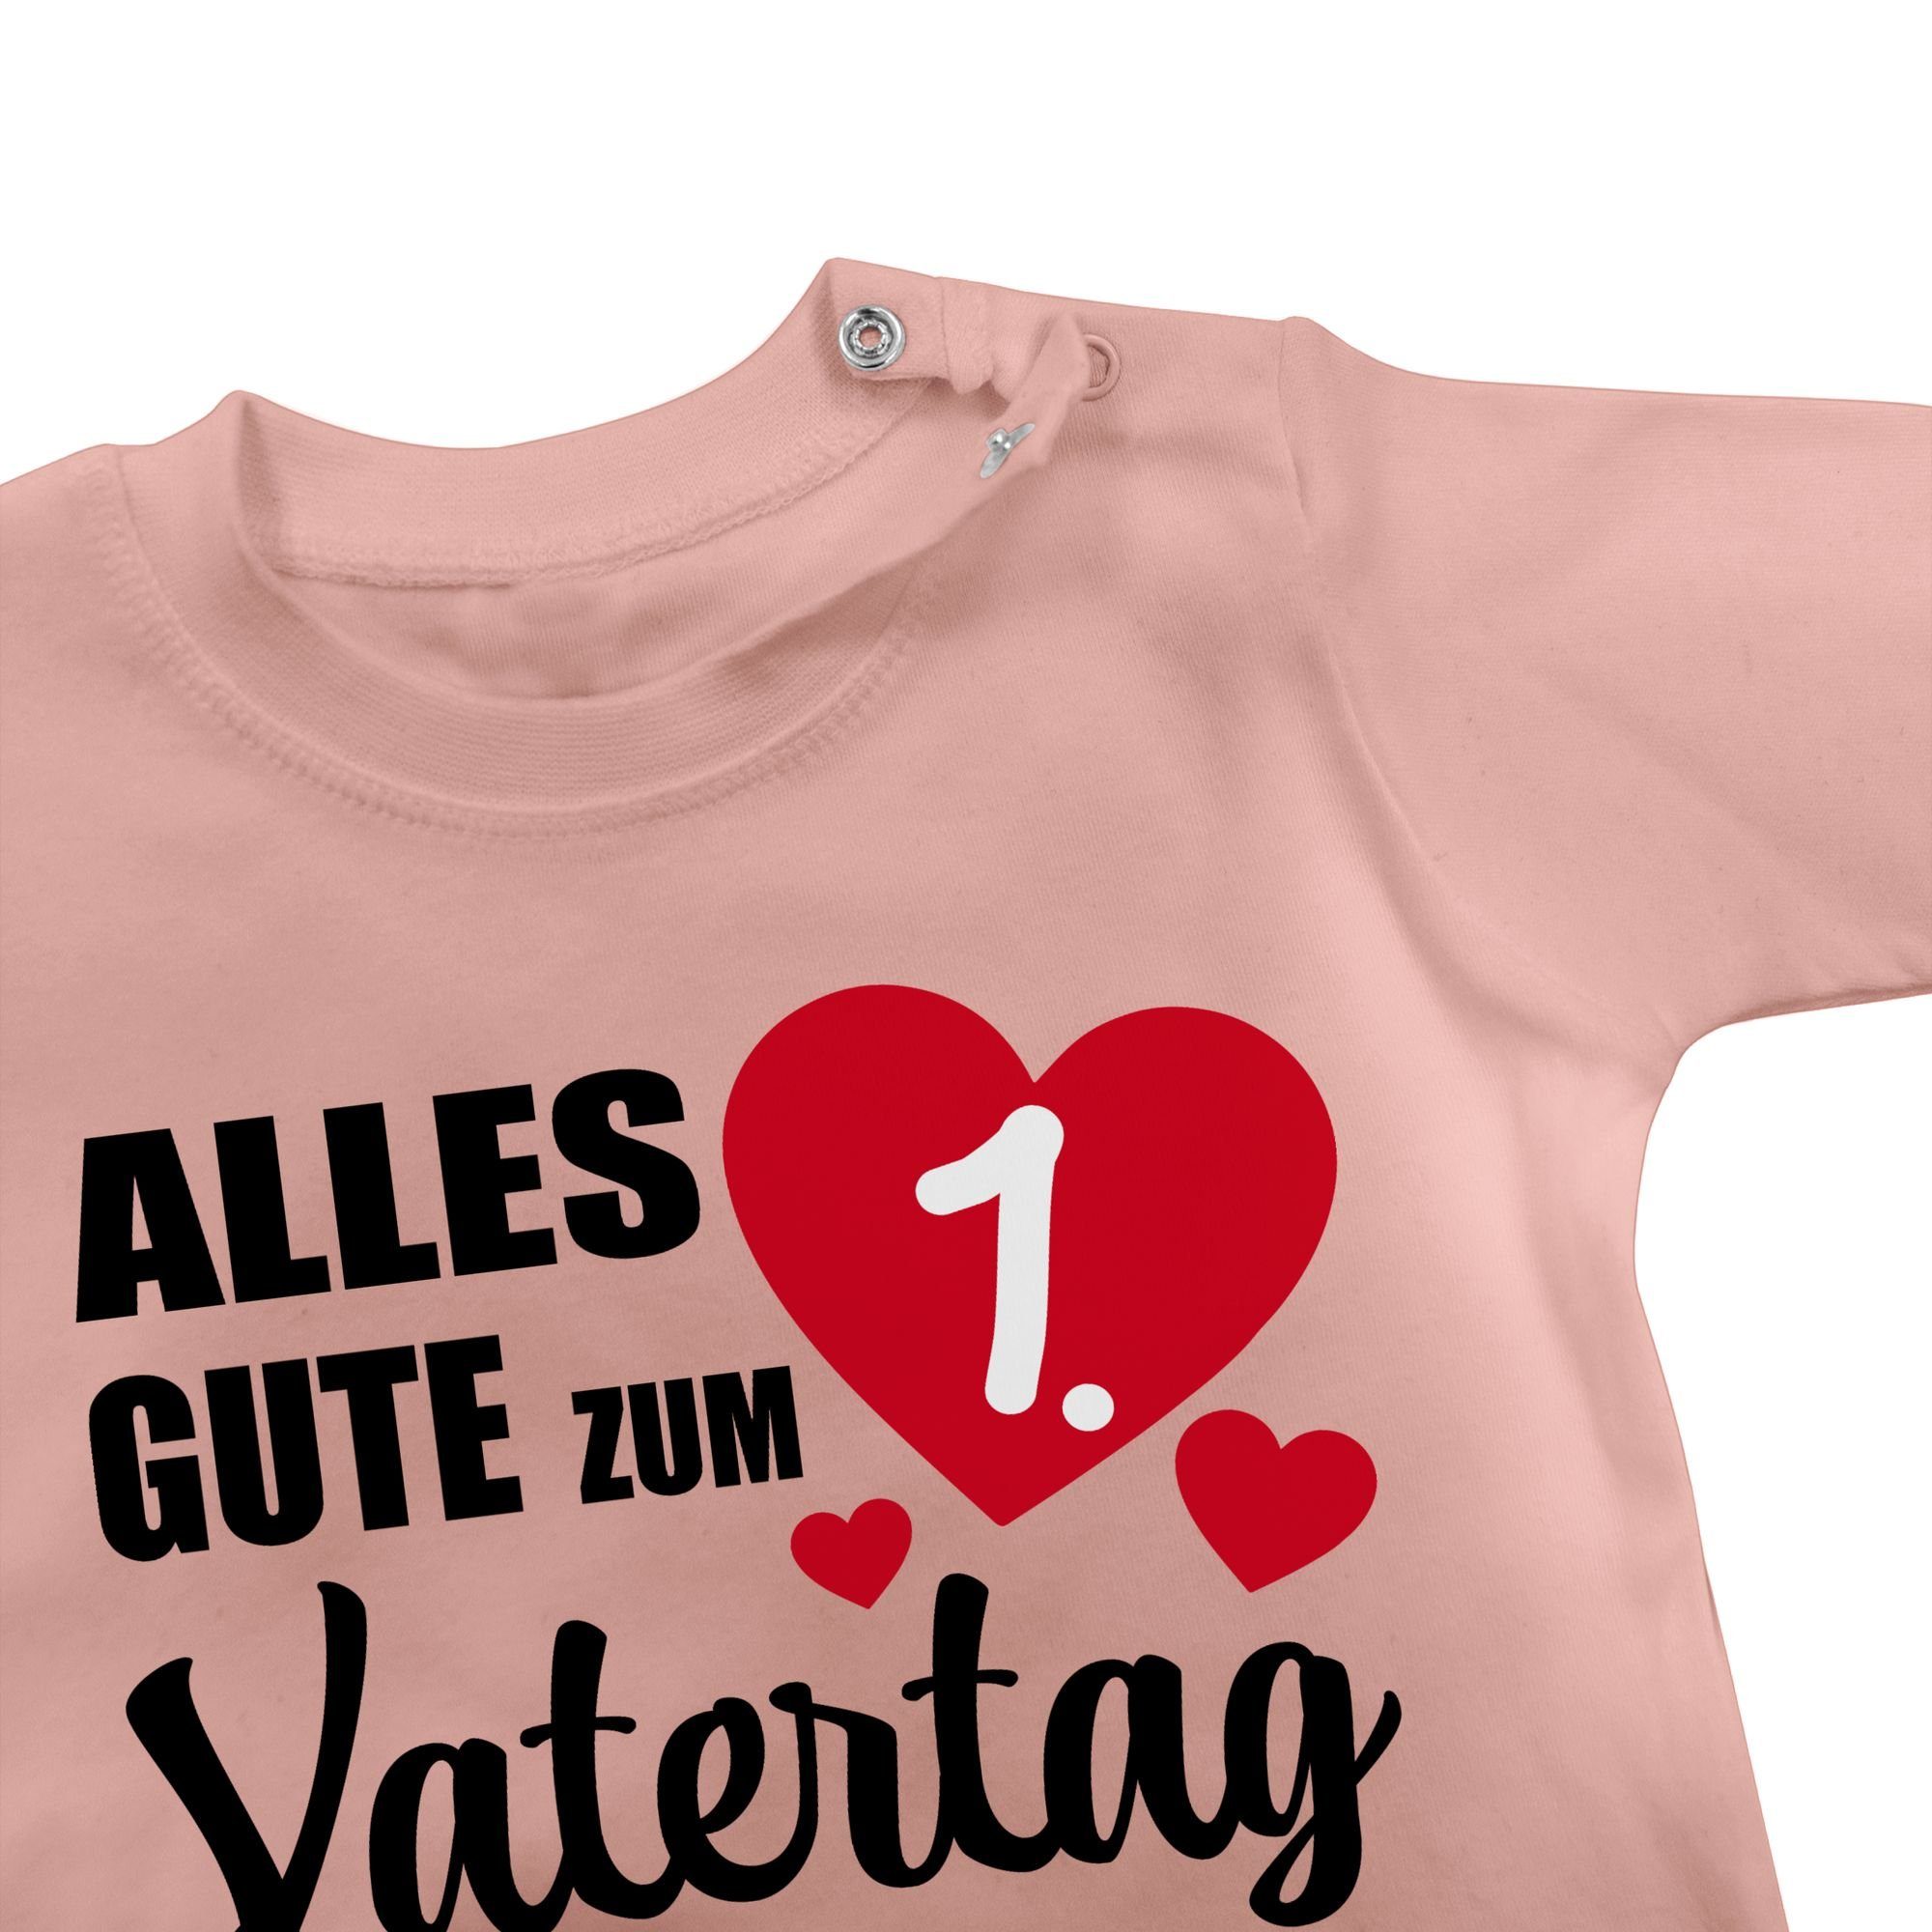 1. Vatertag gute Geschenk ersten Baby Shirtracer T-Shirt Vatertag Vatertag zum Babyrosa - Papa Alles 2